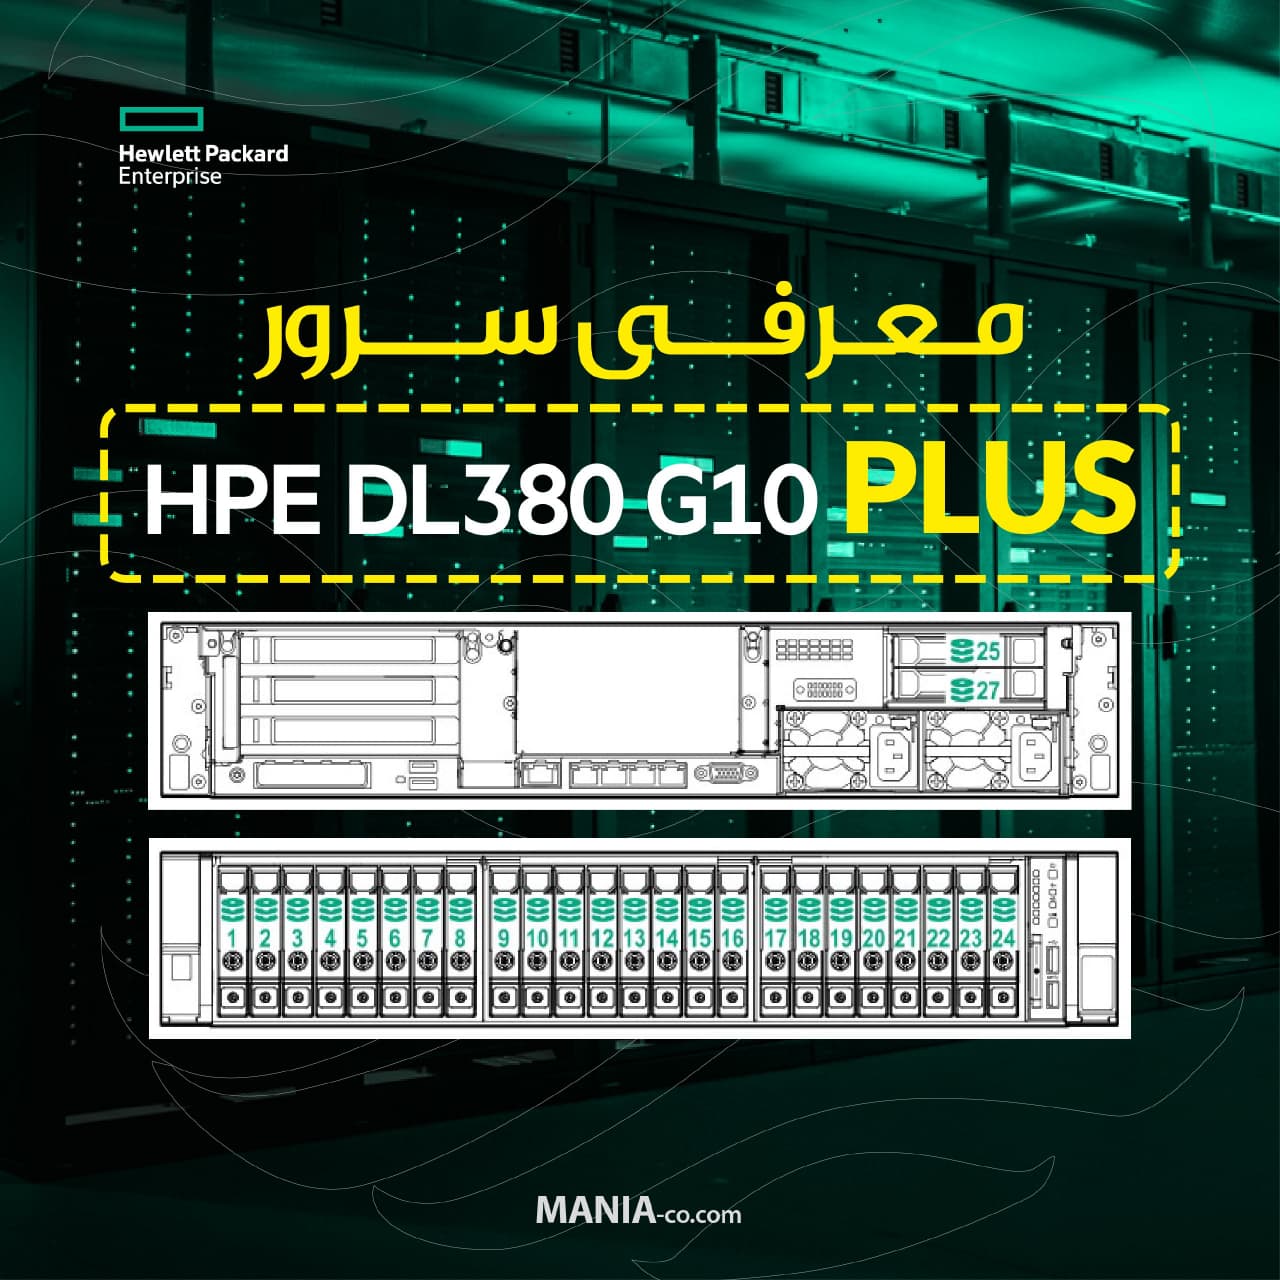  معرفی سرور HPE DL380 G10 PLUS